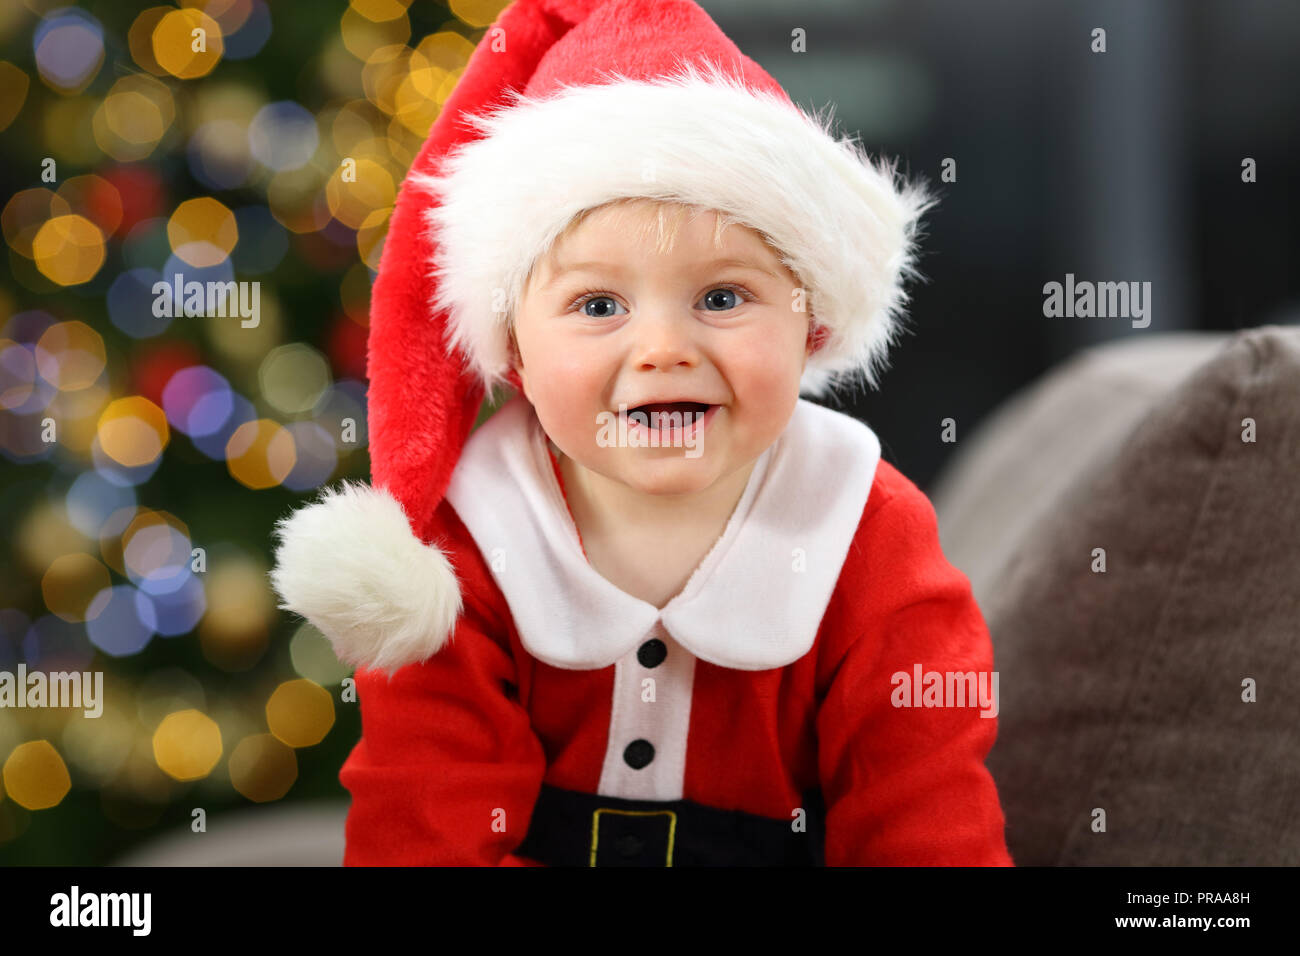 Adorable Bebé De 1 Año Disfrutando De La Navidad En Casa Fotos